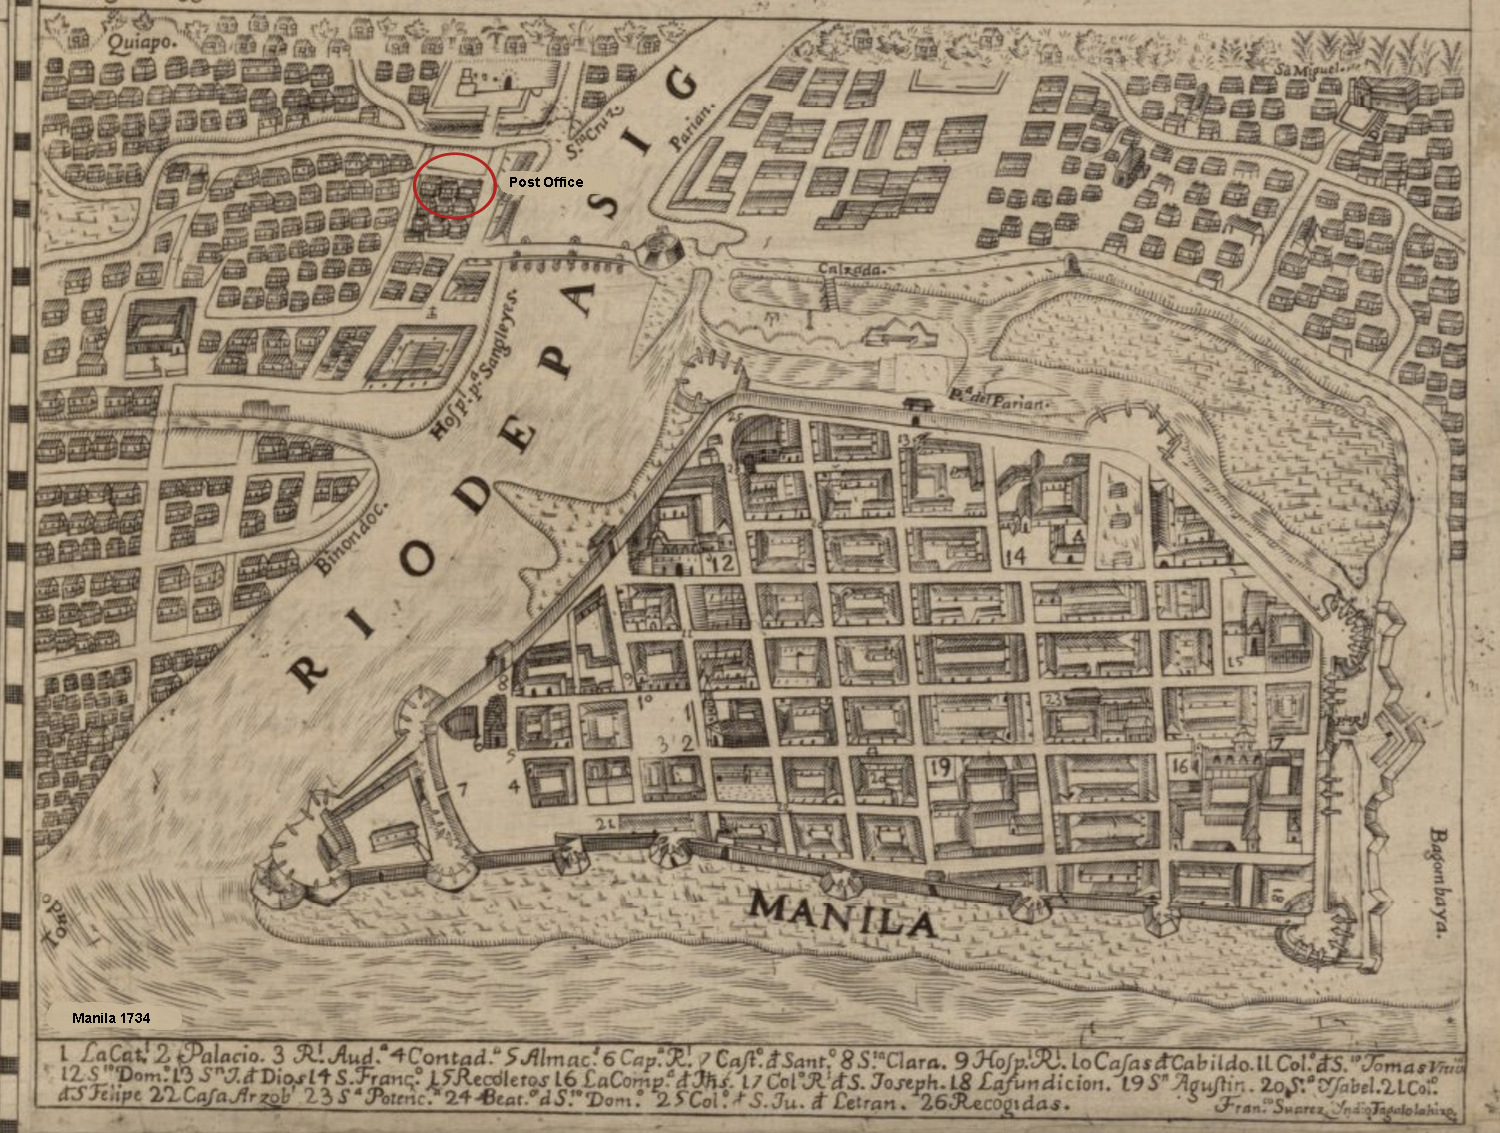 Manila in 1734